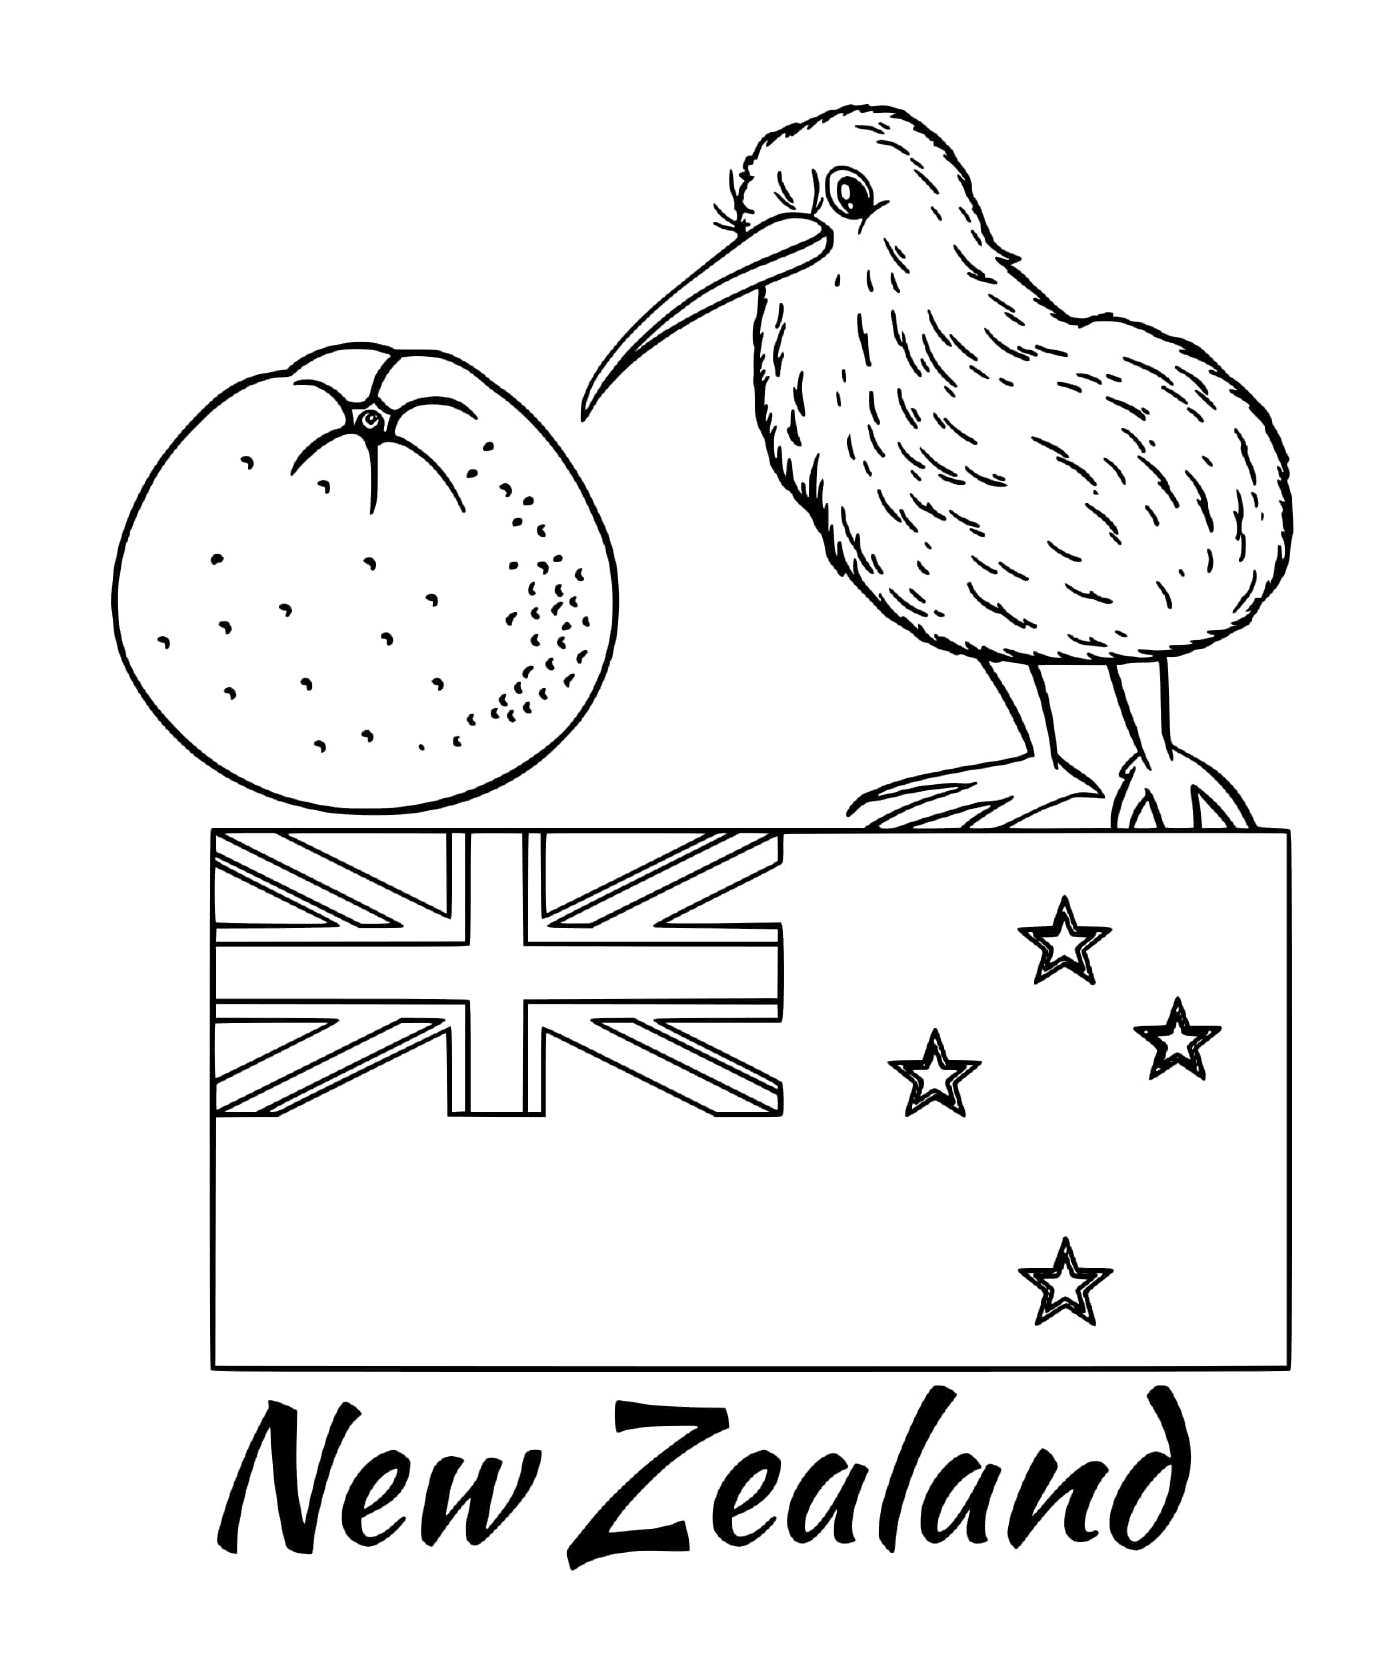  Flag of New Zealand, kiwi 